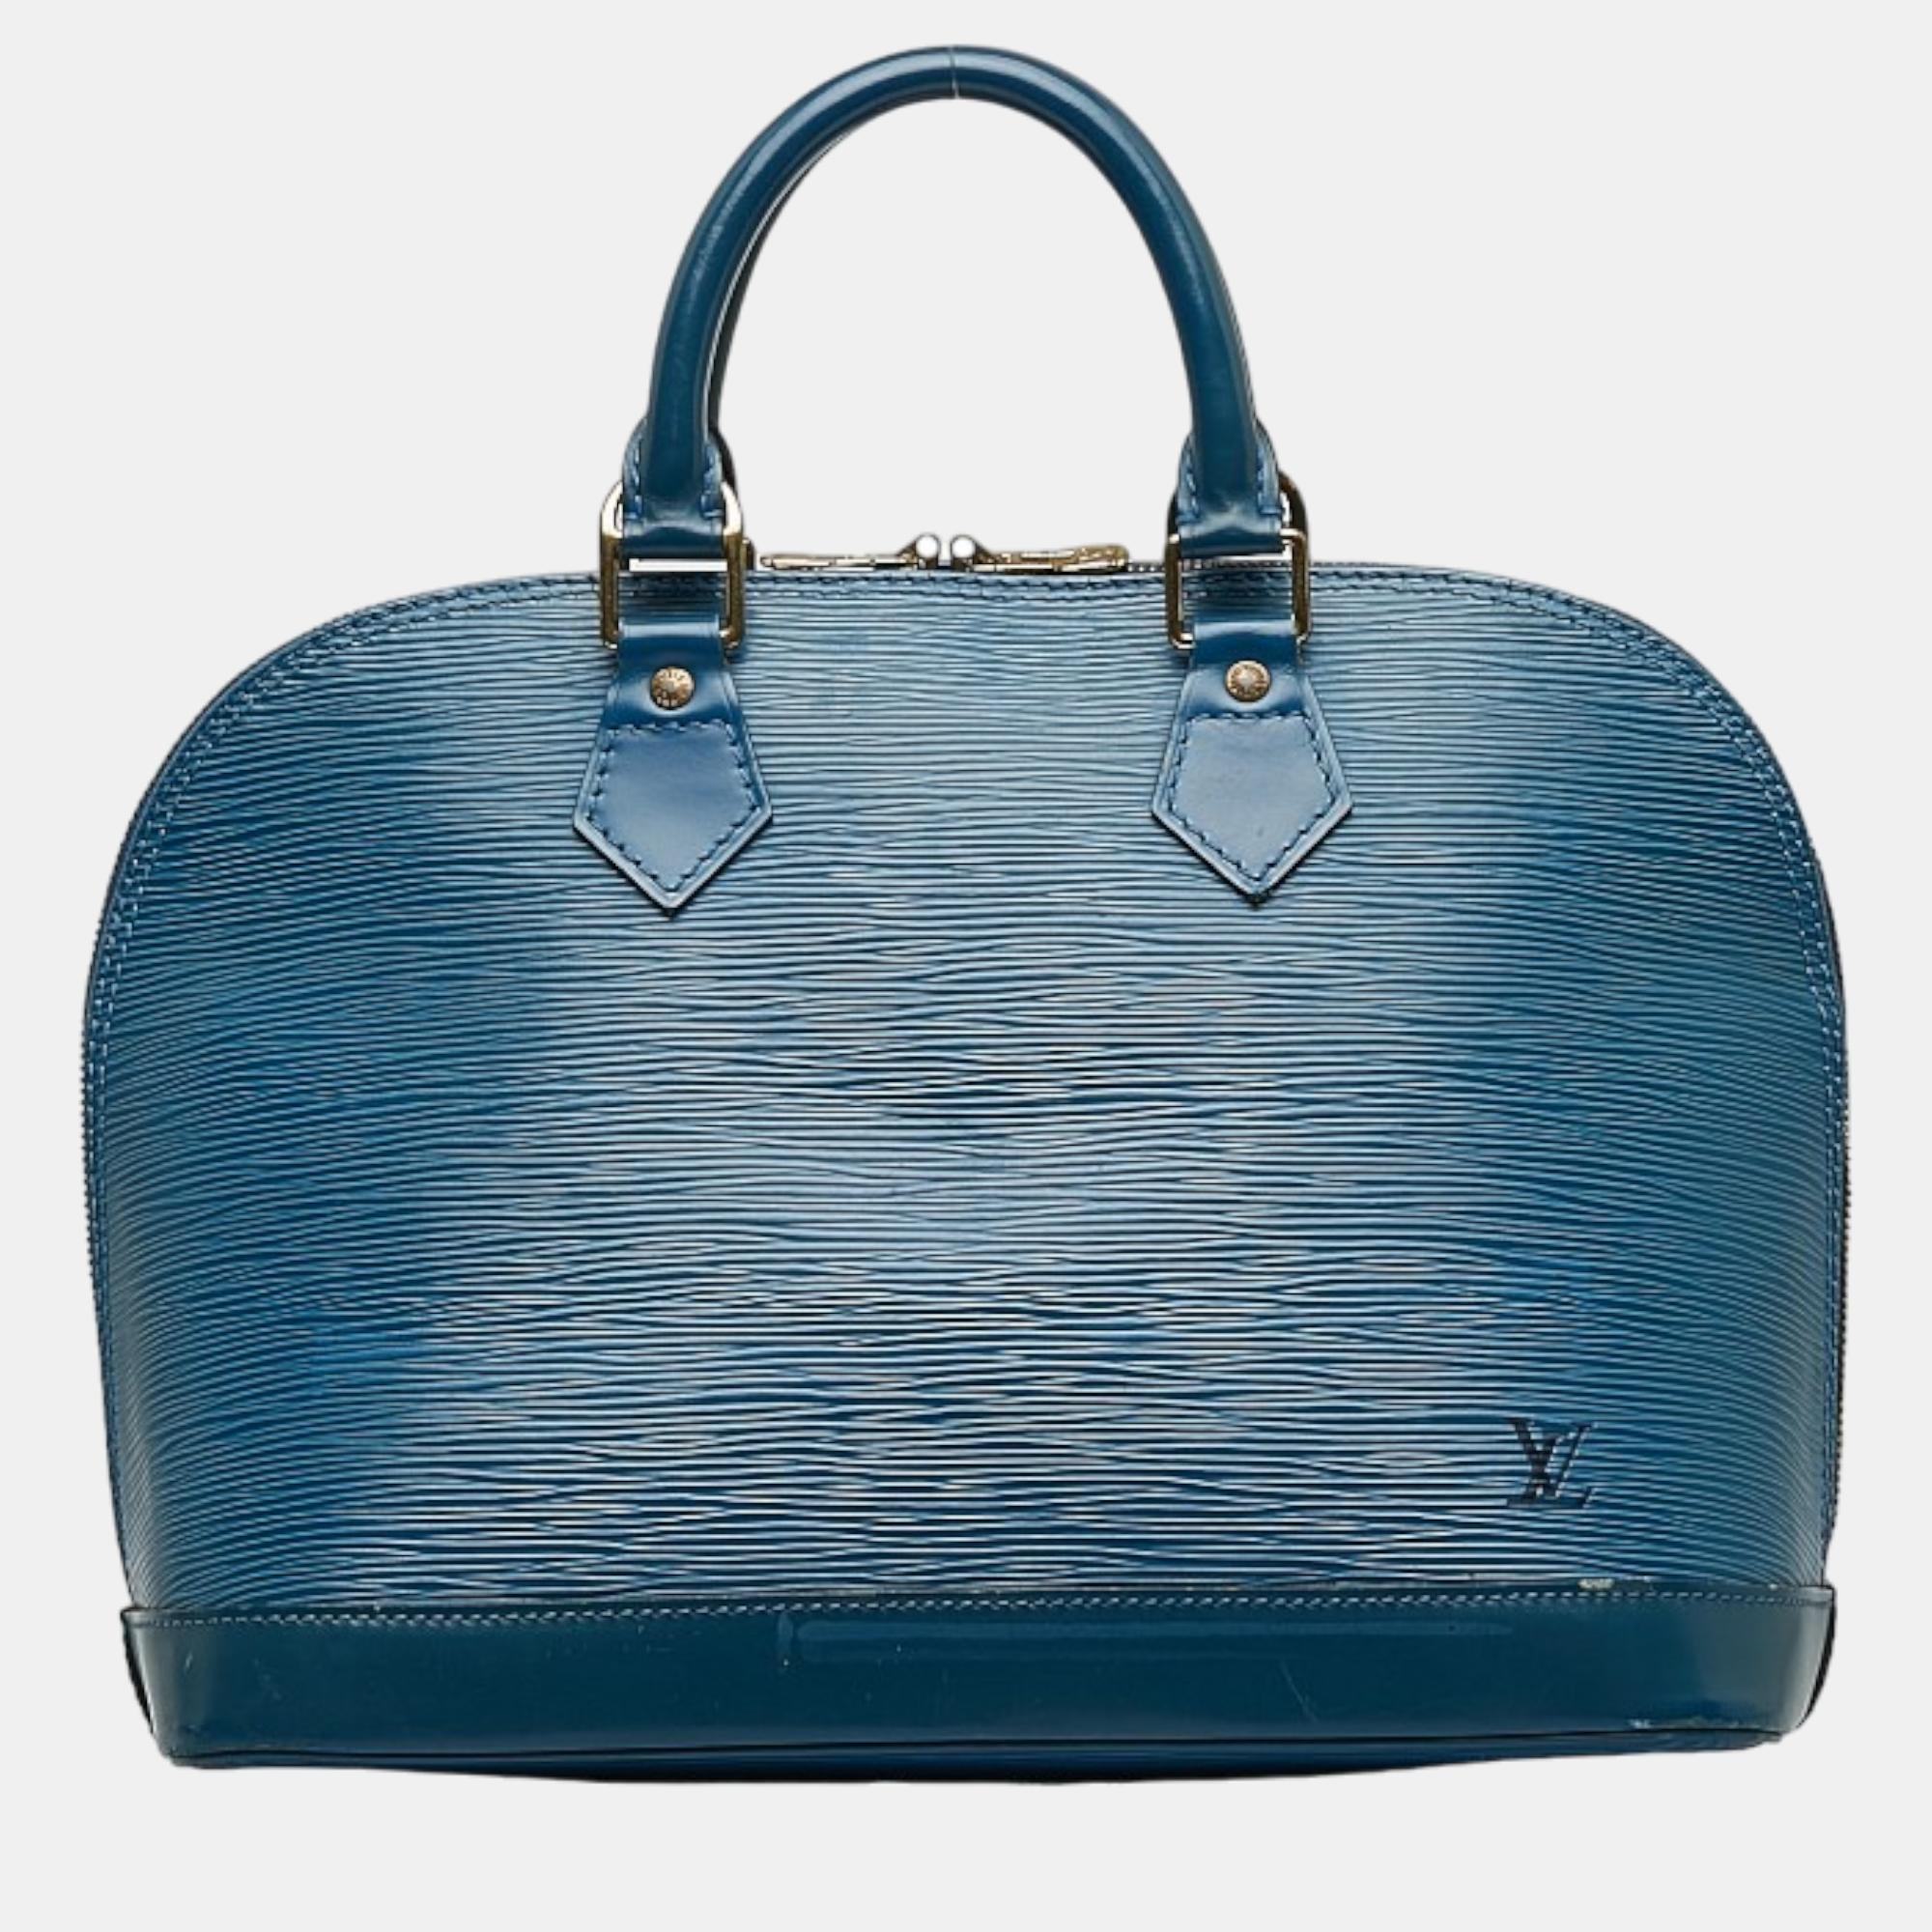 Louis vuitton blue epi leather alma pm satchel